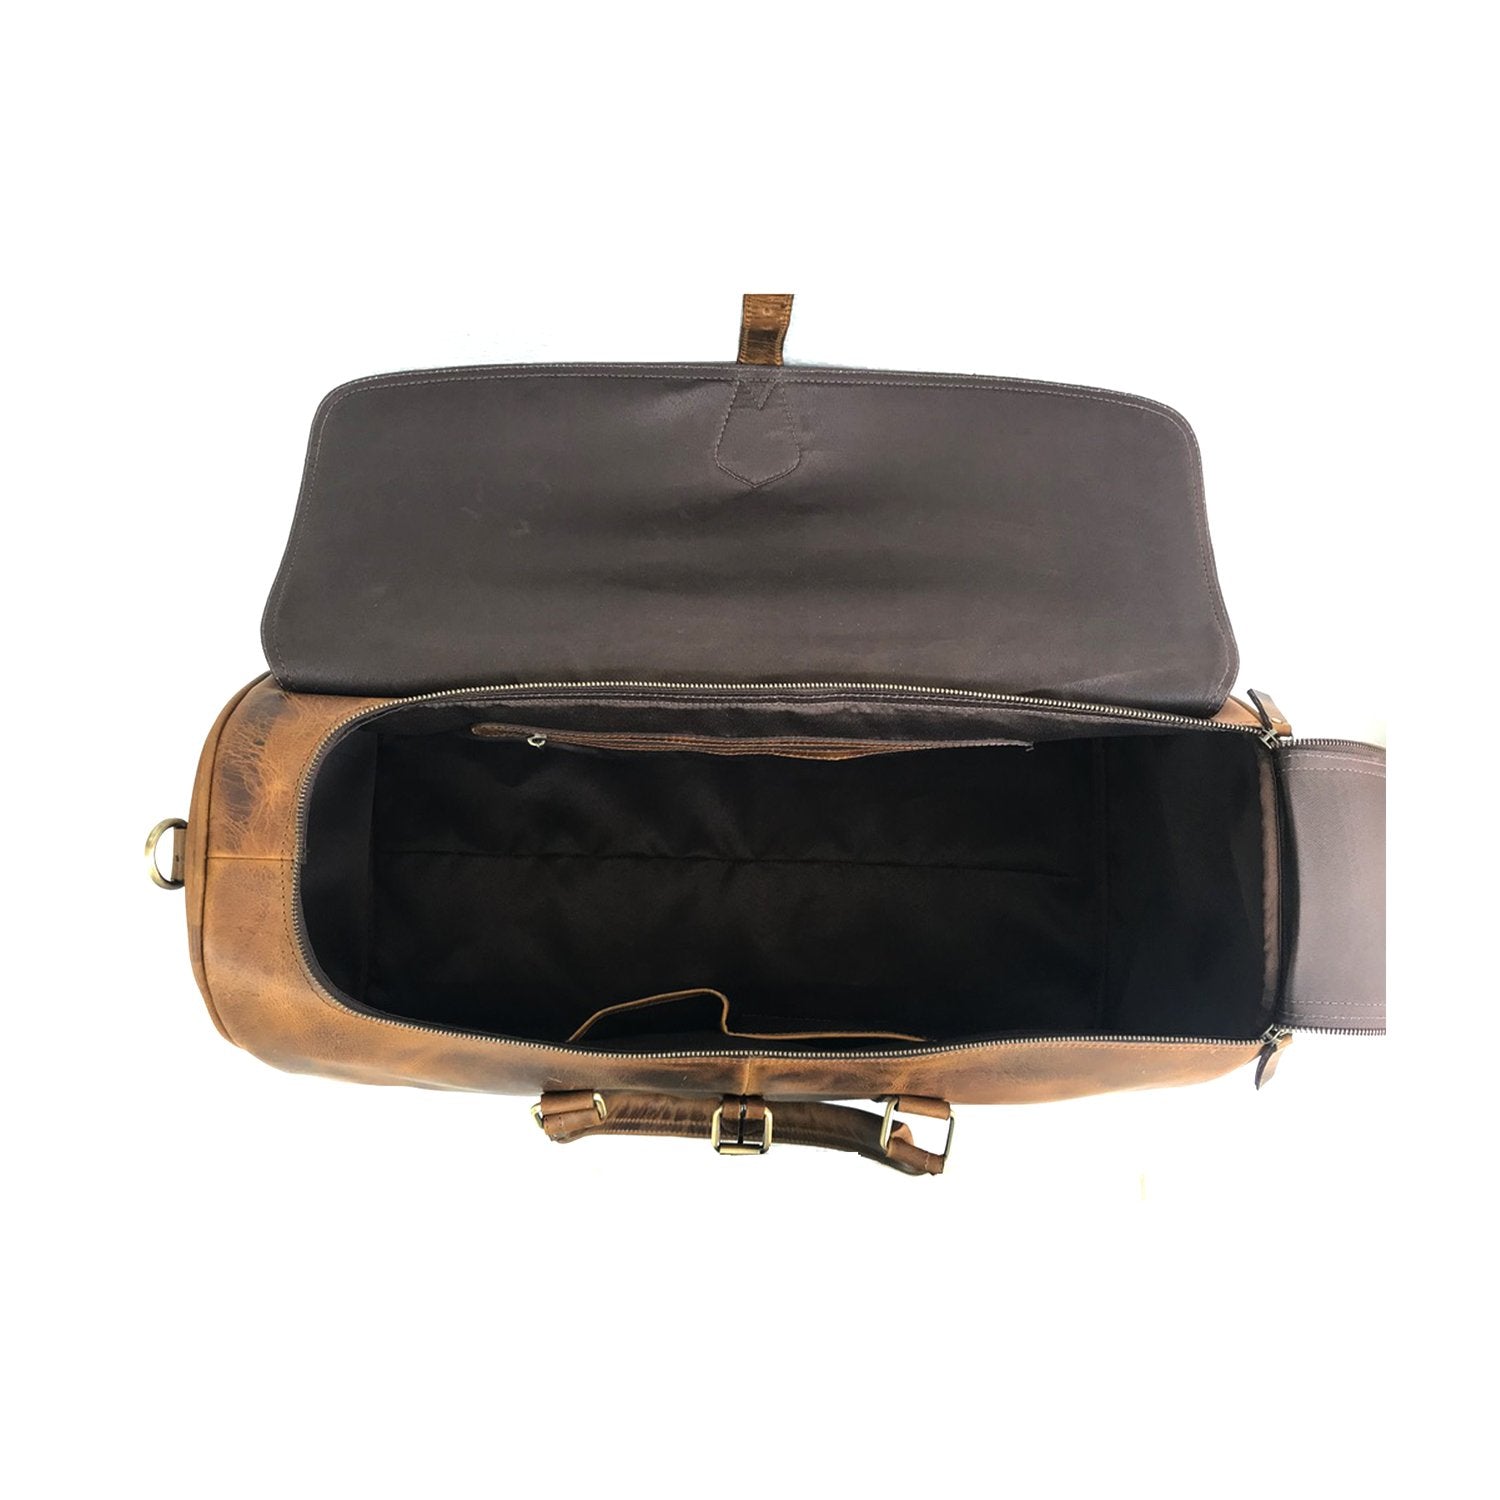 Camelide Hunter Brown Leather Weekender Bag